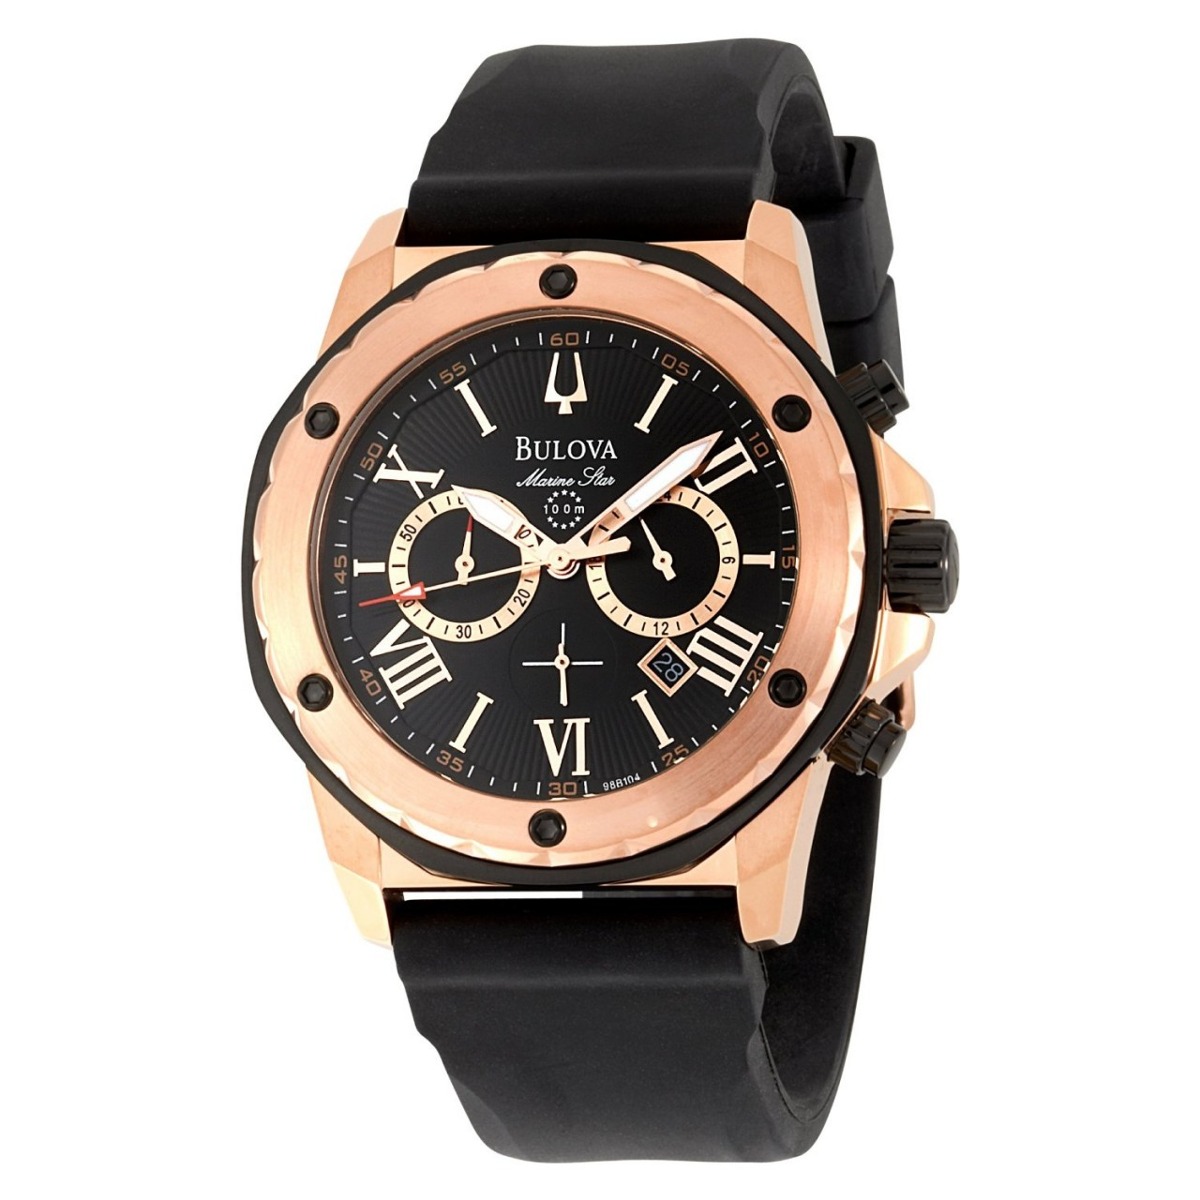 Relógio Bulova Marine Star - 98b104 - R$ 1.749,99 em Mercado Livre